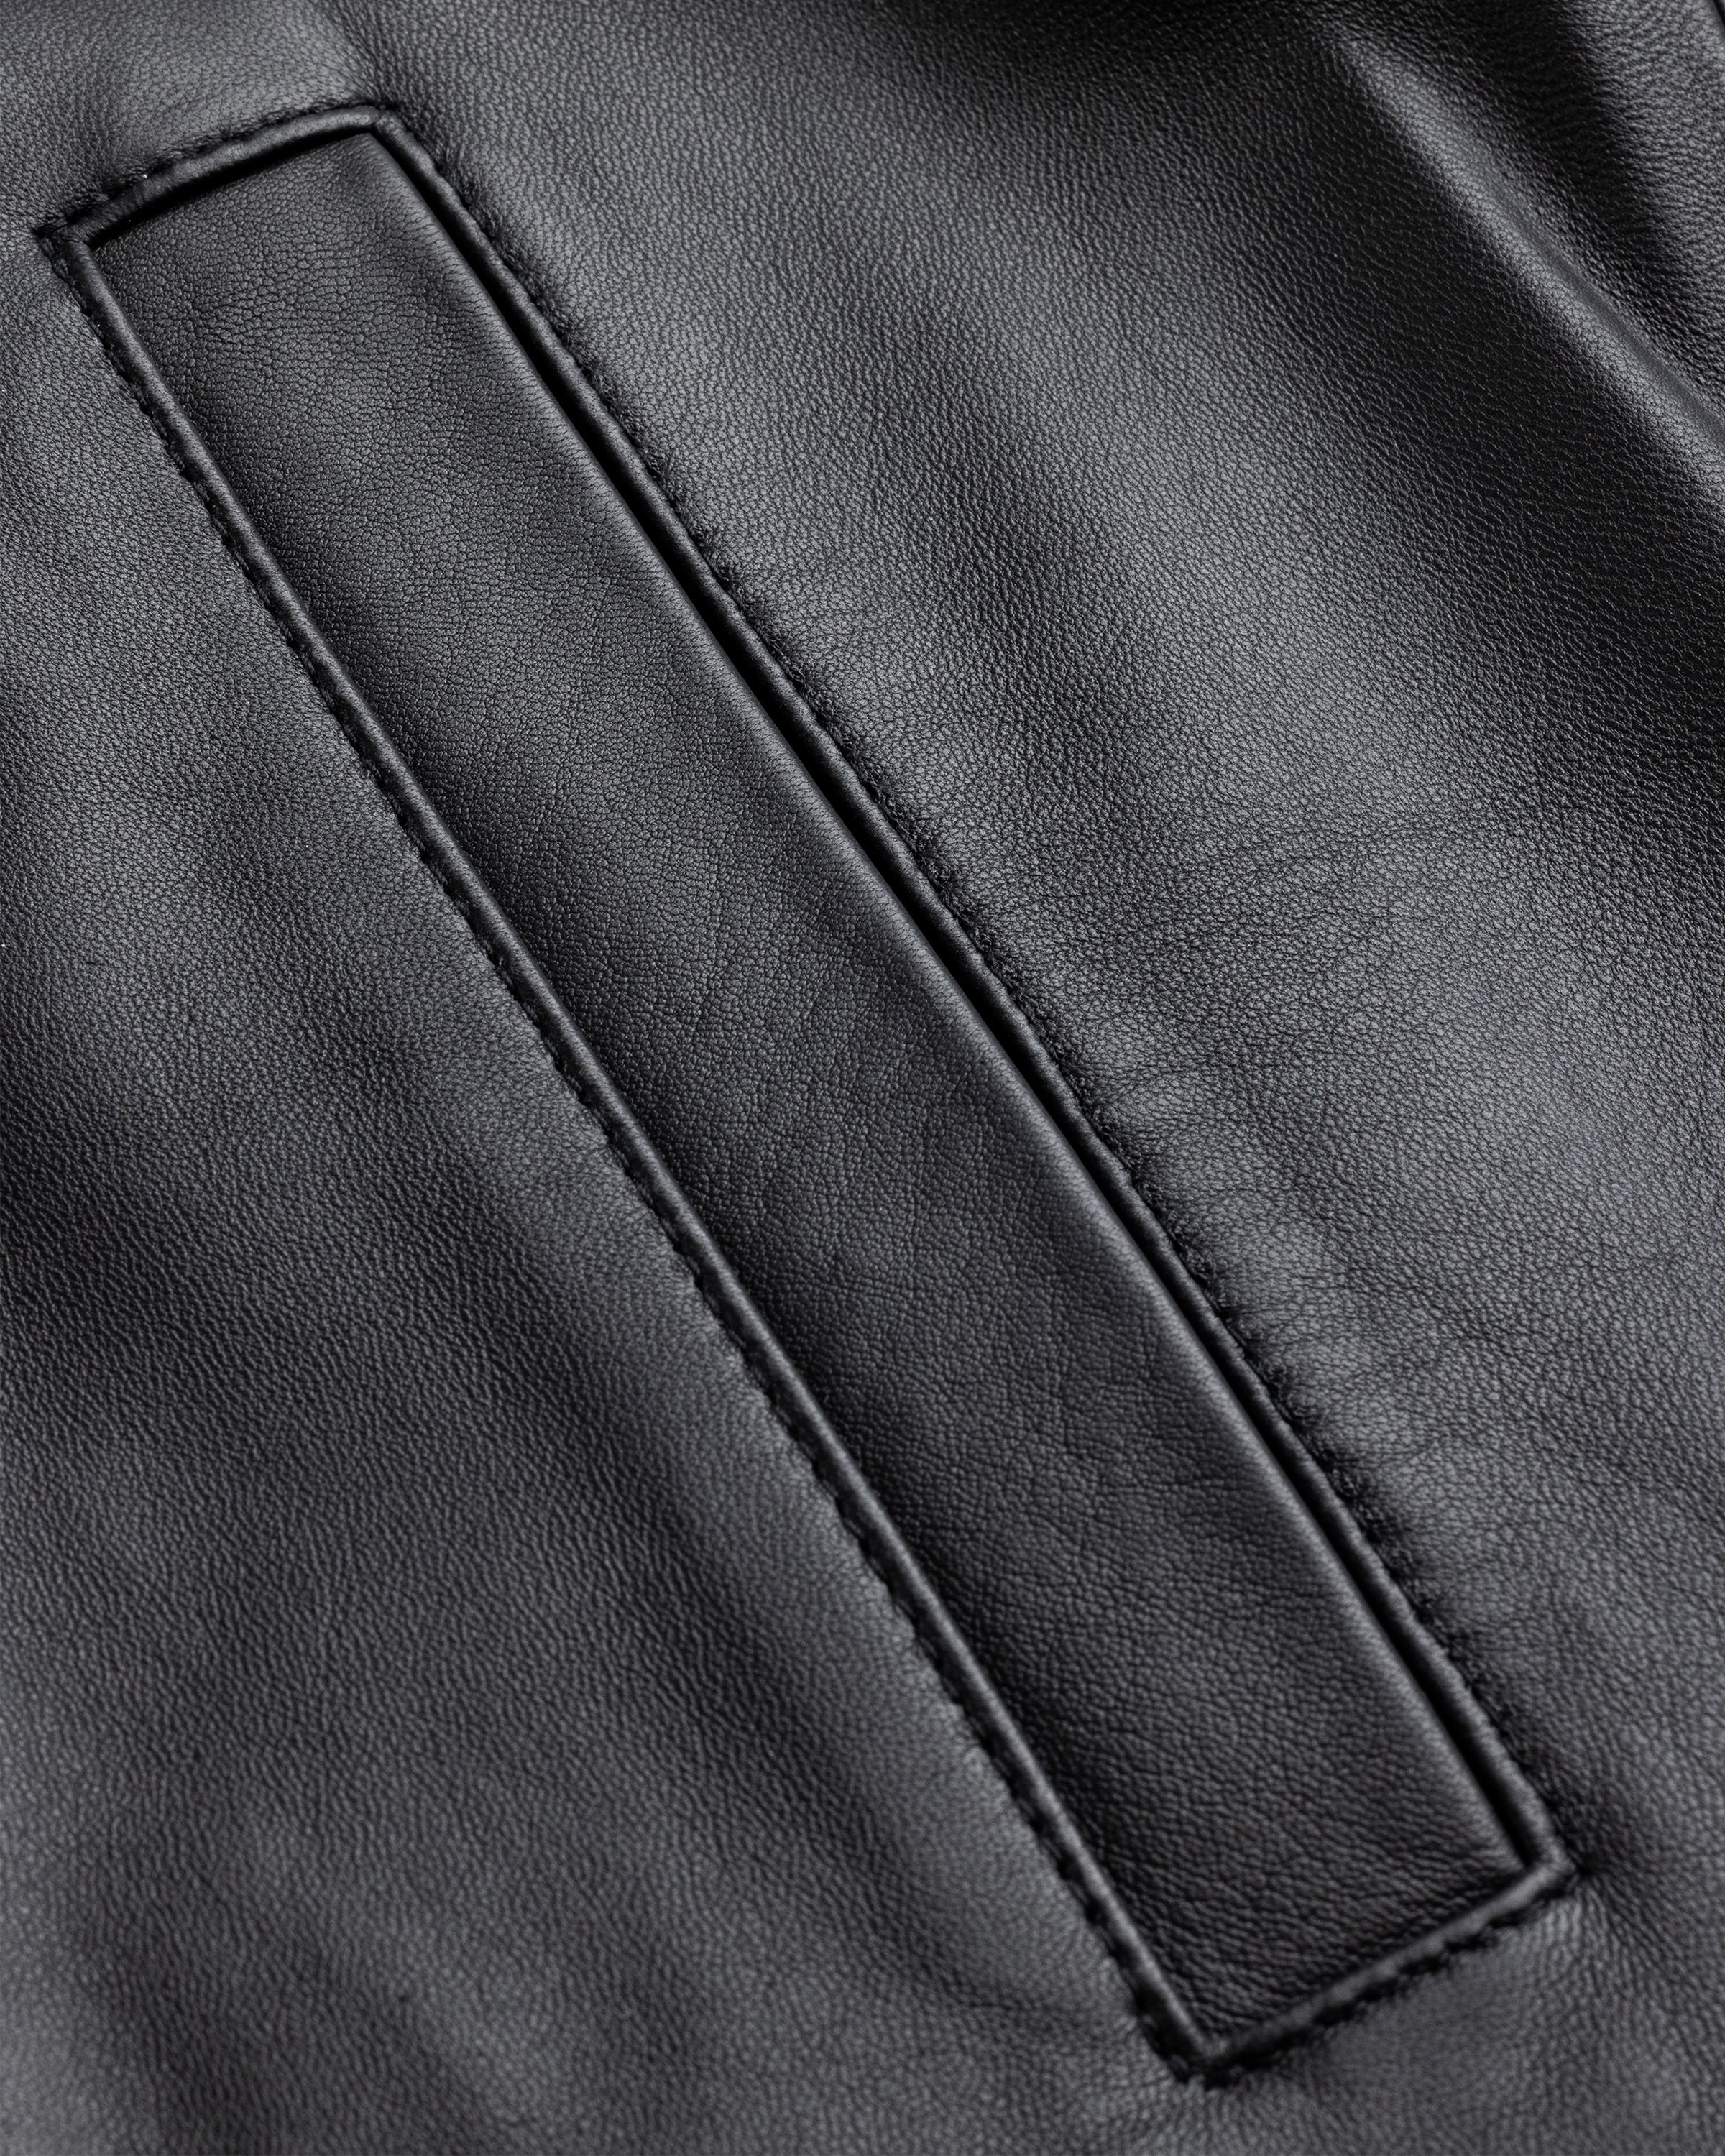 Highsnobiety HS05 - Leather Jacket Black - Clothing - Black - Image 9